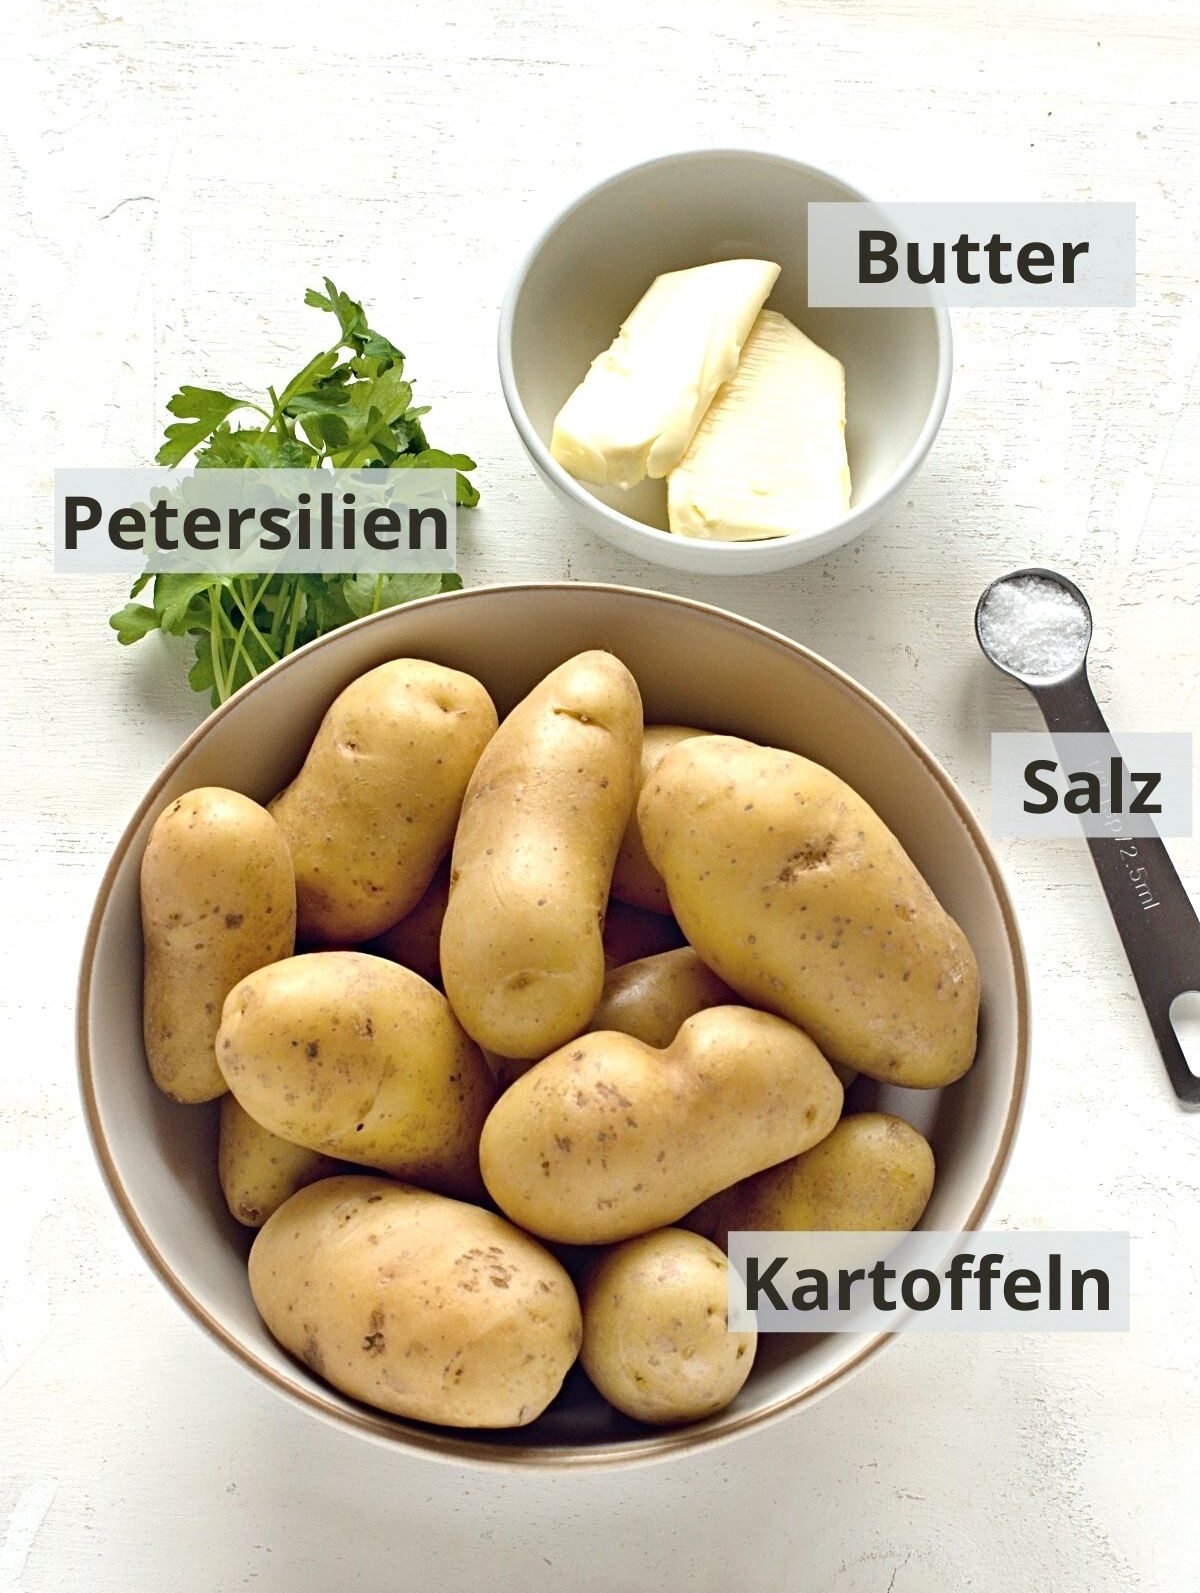 Petersilienkartoffeln Zutaten gelistet.